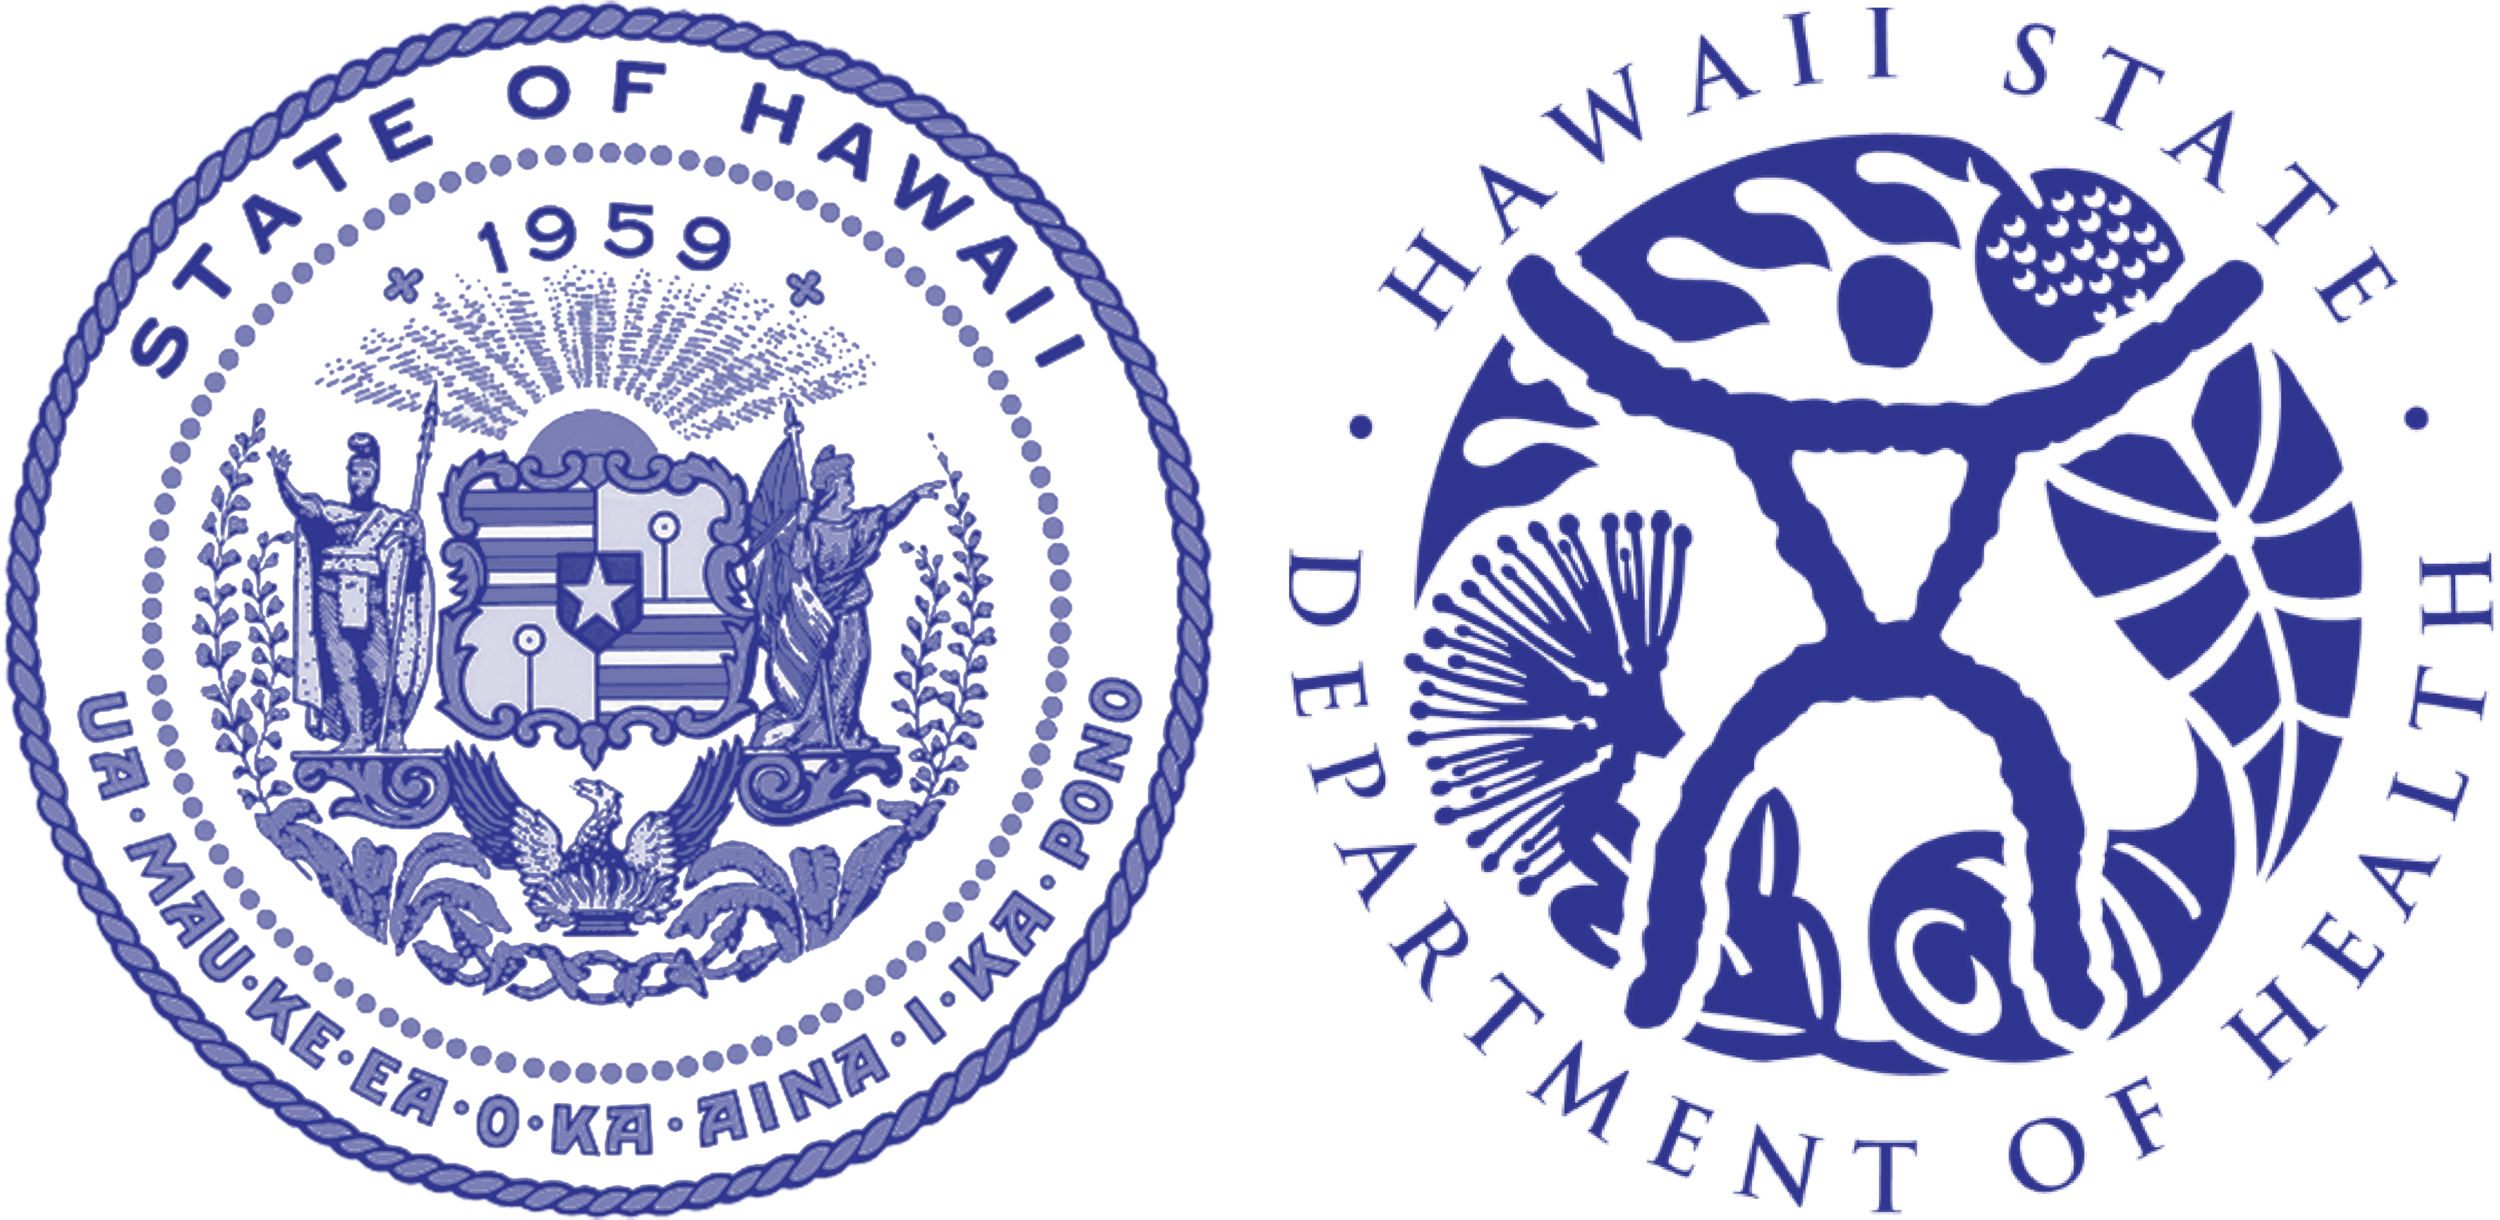 HPHA-ресурсы-лого-государство Гавайи-ДОХ-alt.png